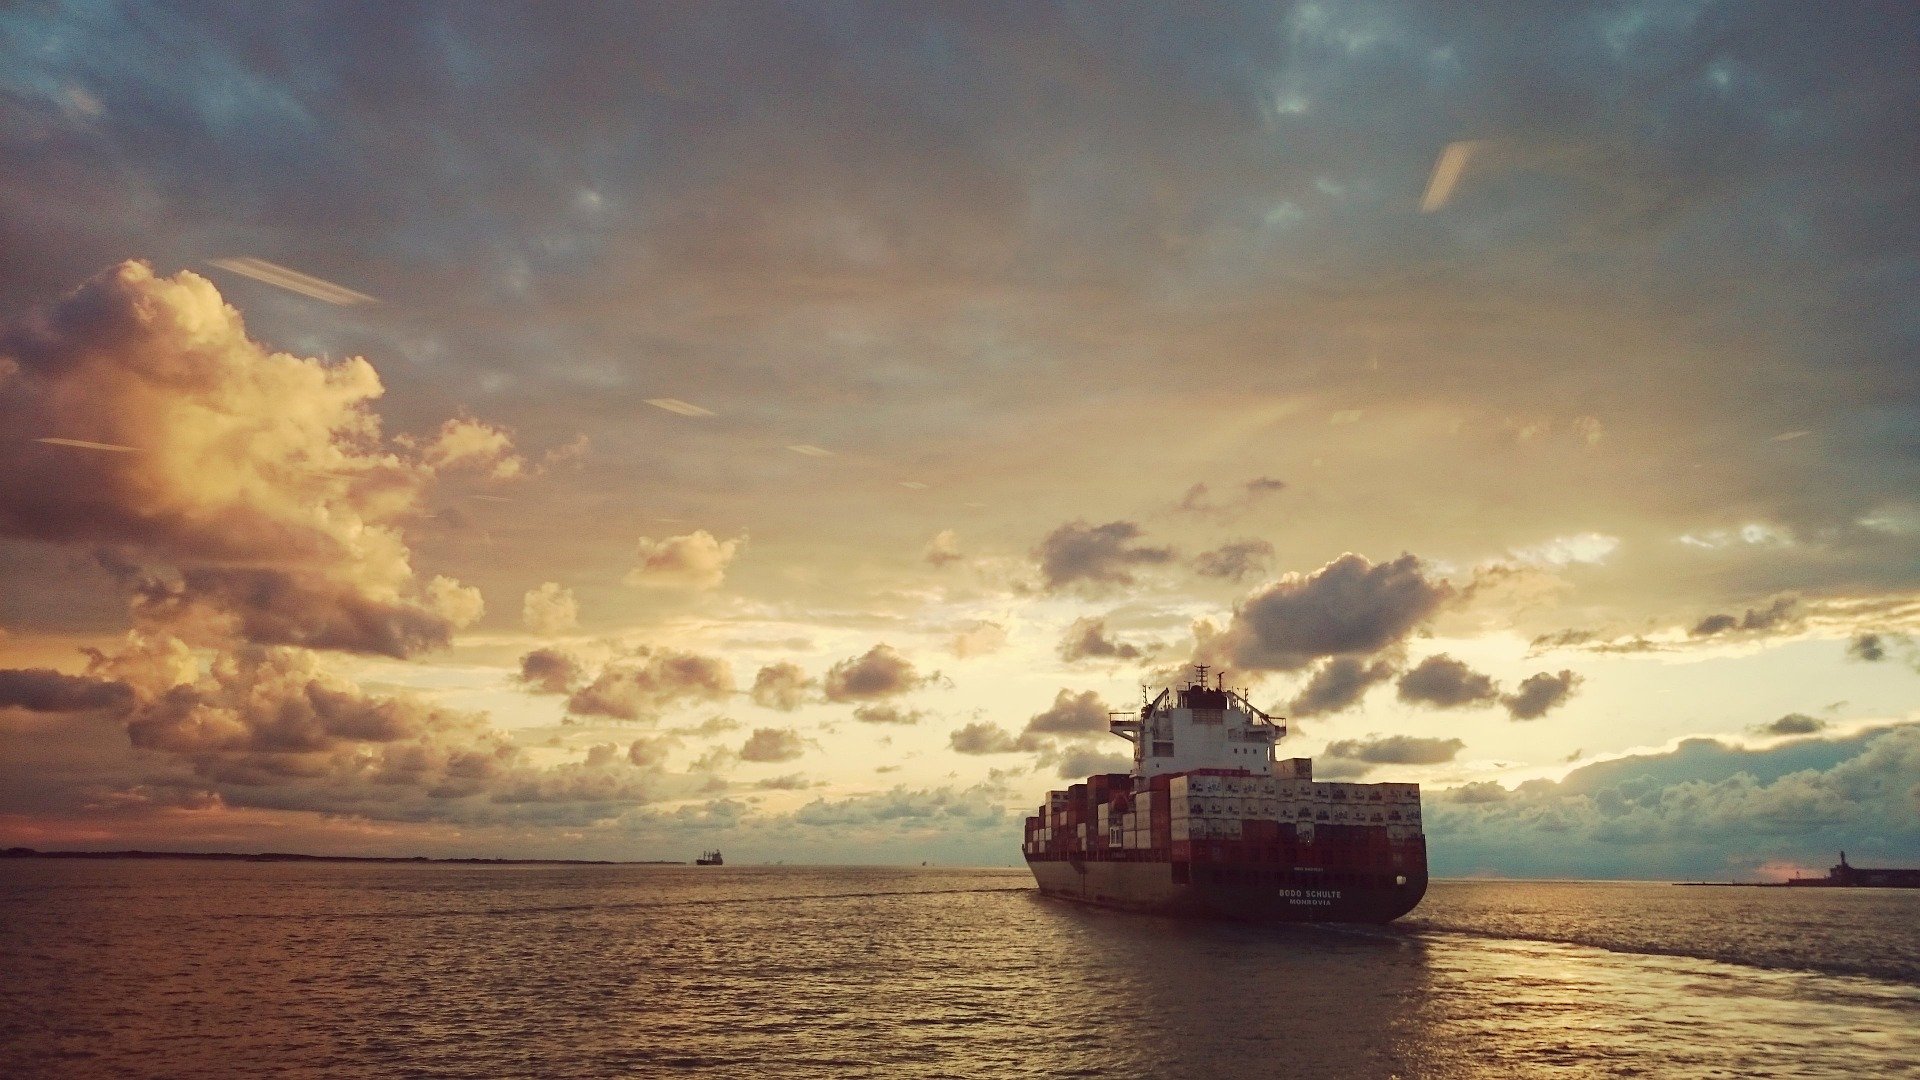 Zeebrugge added to Port of Cork’s Antwerp service